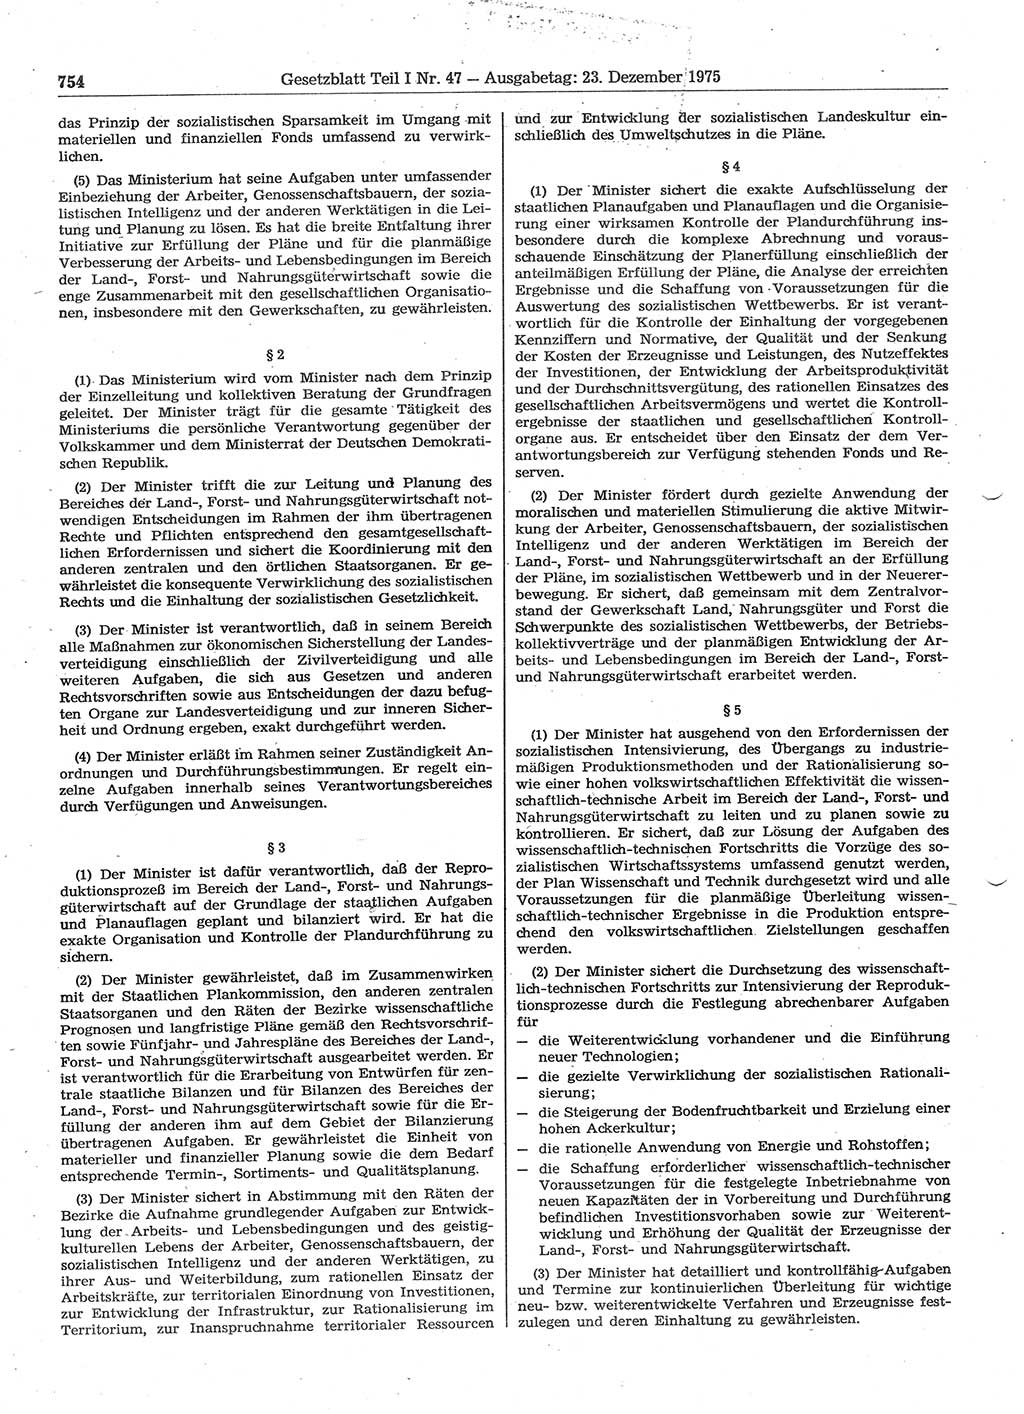 Gesetzblatt (GBl.) der Deutschen Demokratischen Republik (DDR) Teil Ⅰ 1975, Seite 754 (GBl. DDR Ⅰ 1975, S. 754)